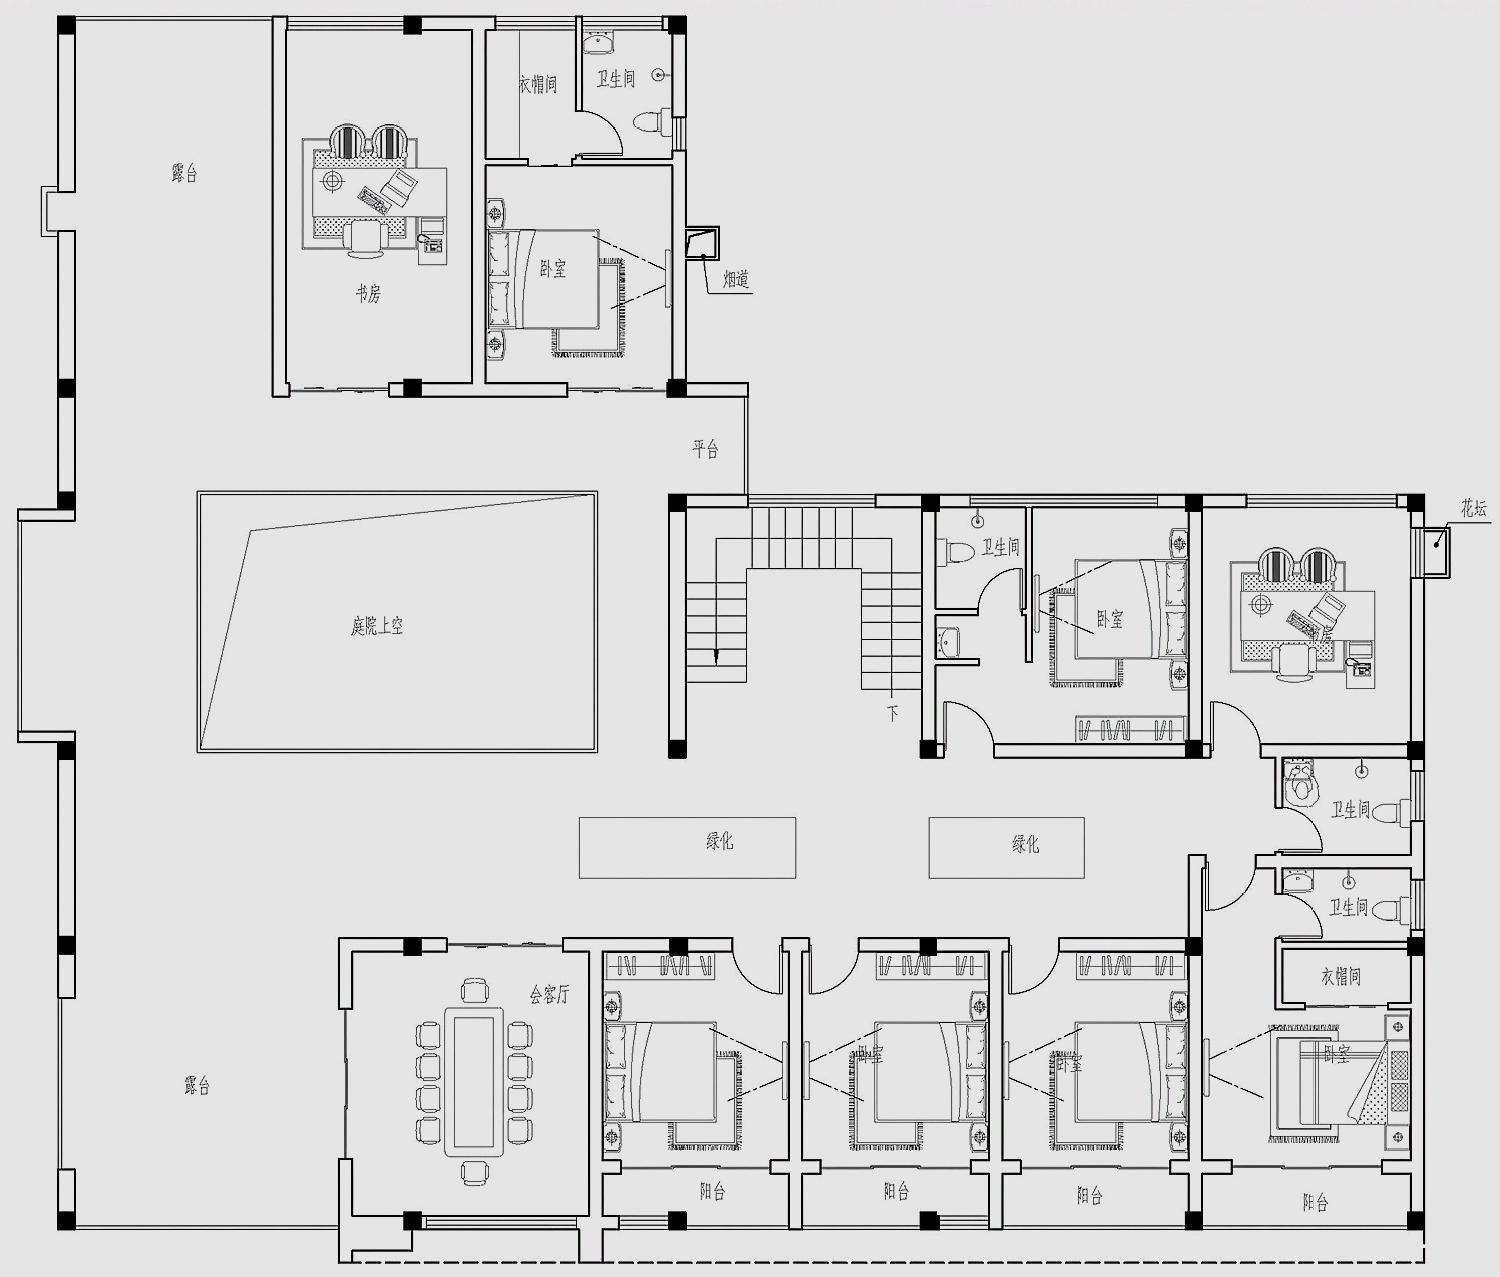 二层平面设计图:卧室,休息区